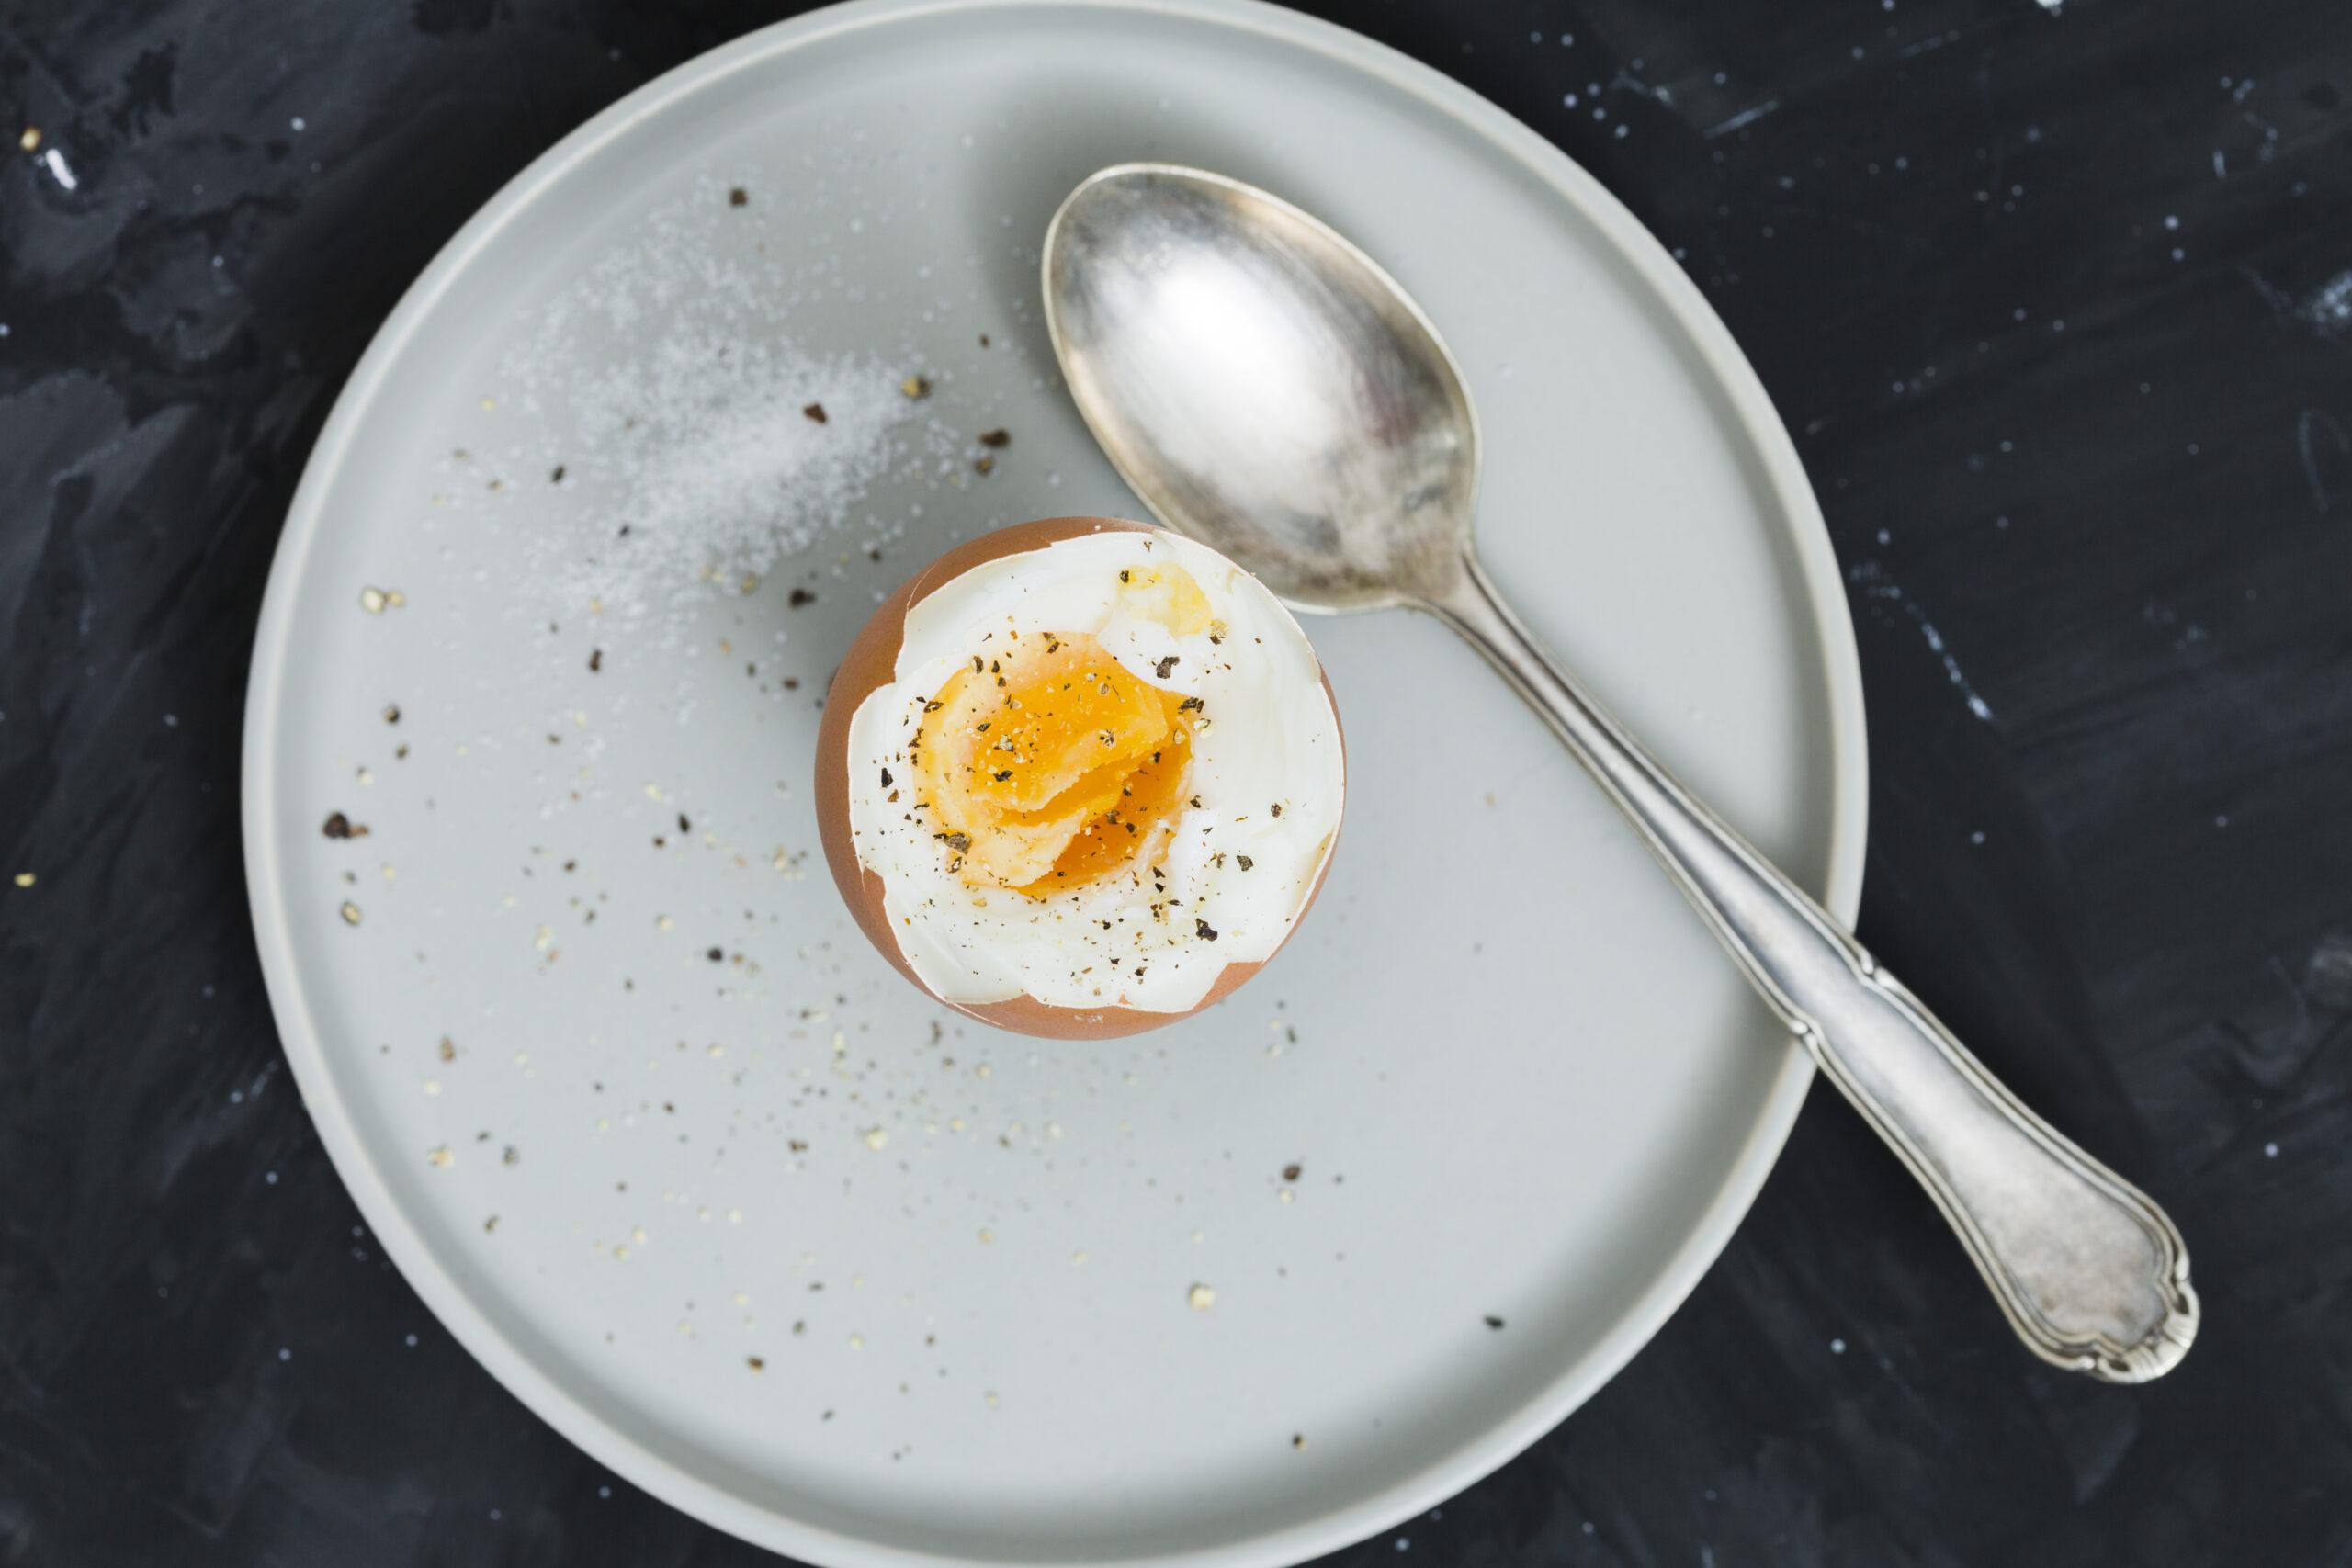 Ketahui Manfaat dan Risiko Makan Telur Setengah Matang